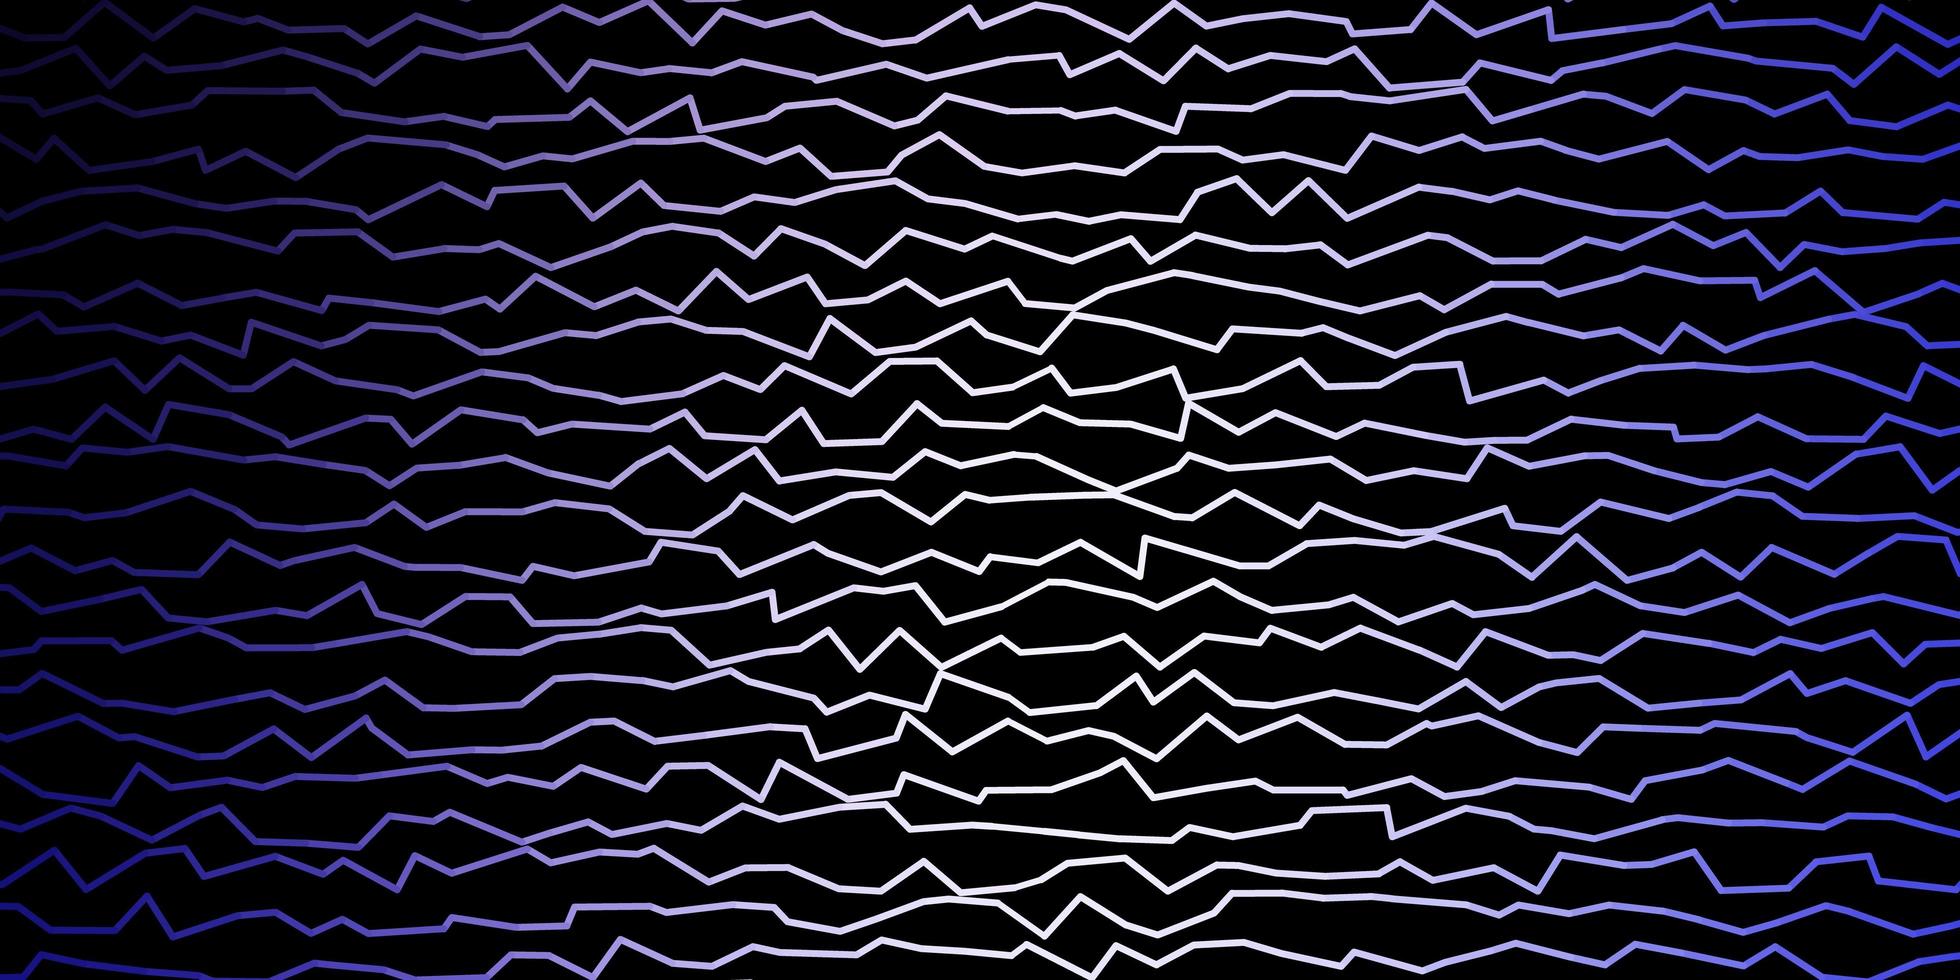 patrón de vector púrpura oscuro con líneas.